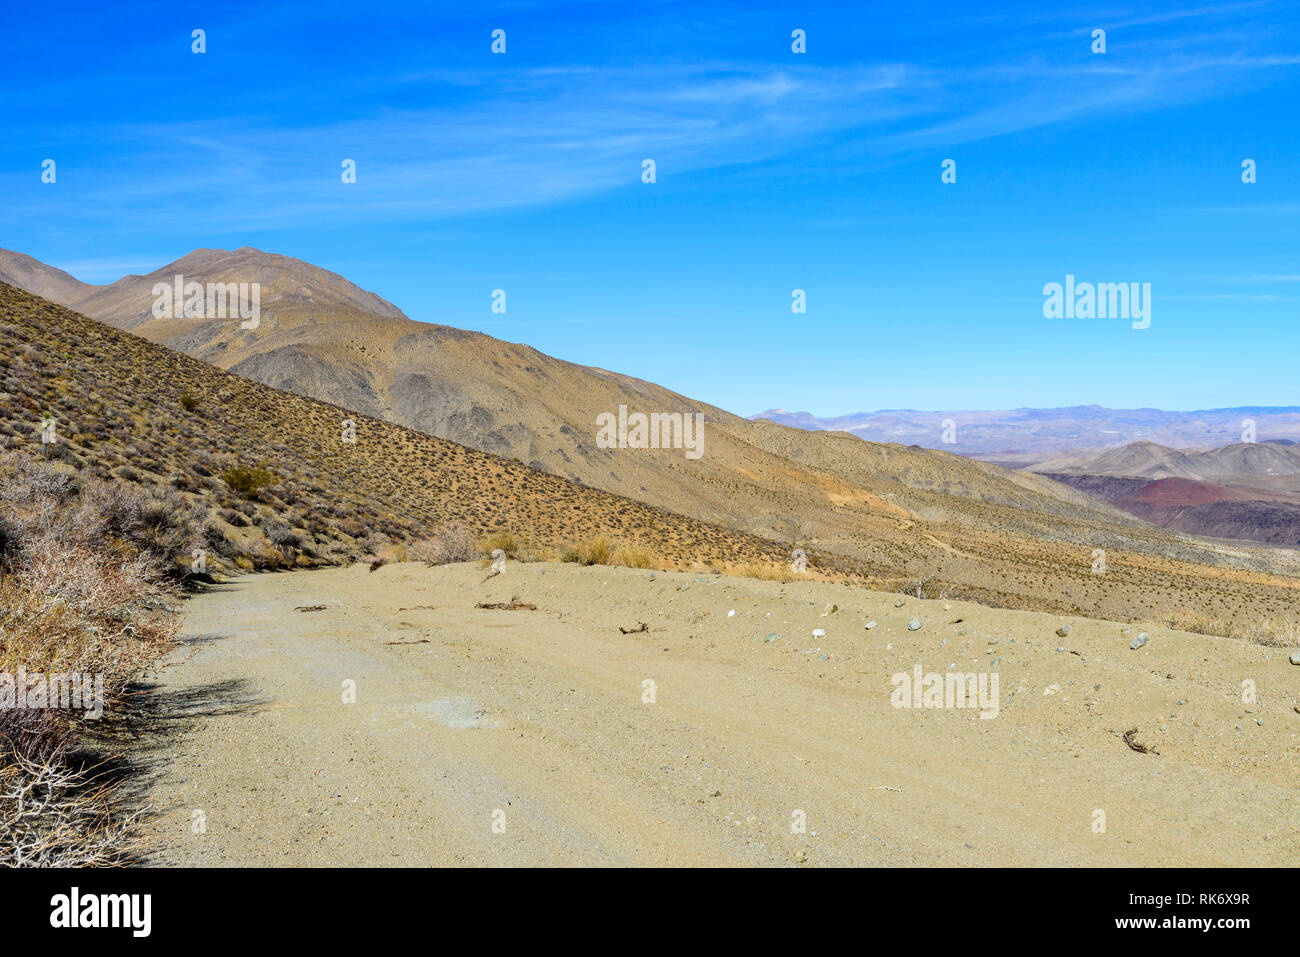 Deserto di strada sterrata che conduce verso montagne brulle sotto il luminoso cielo blu. Foto Stock